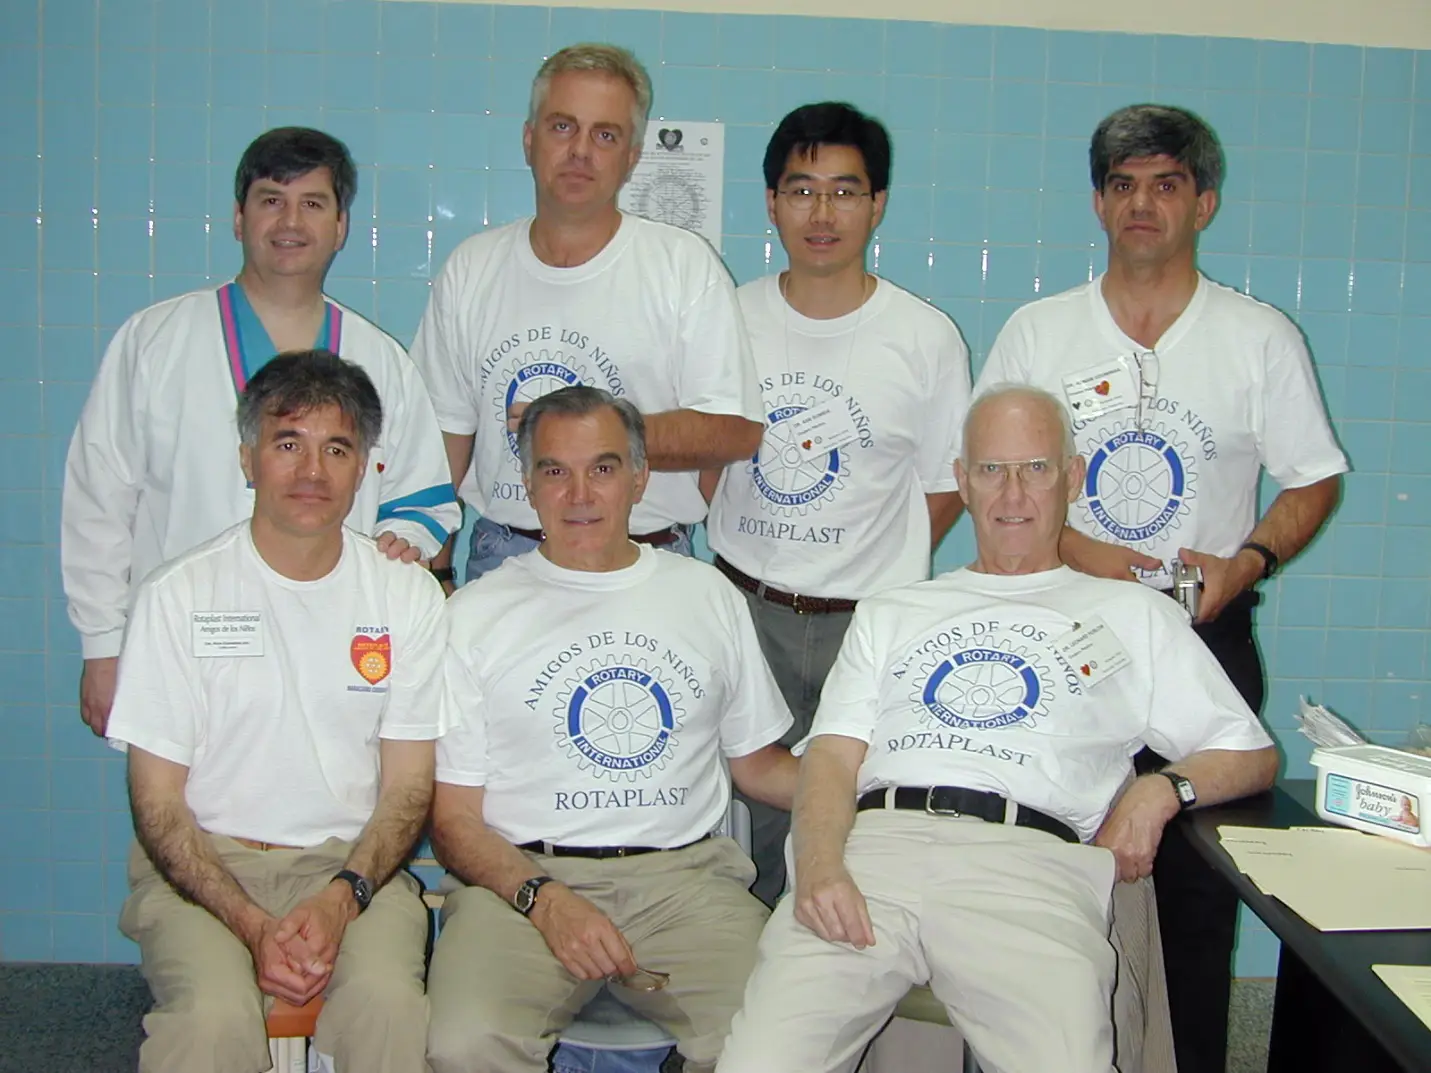 Rotaplast Gönüllü Cerrahlar ekibi, Ağustos 2000 Maracaibo/Venezuela